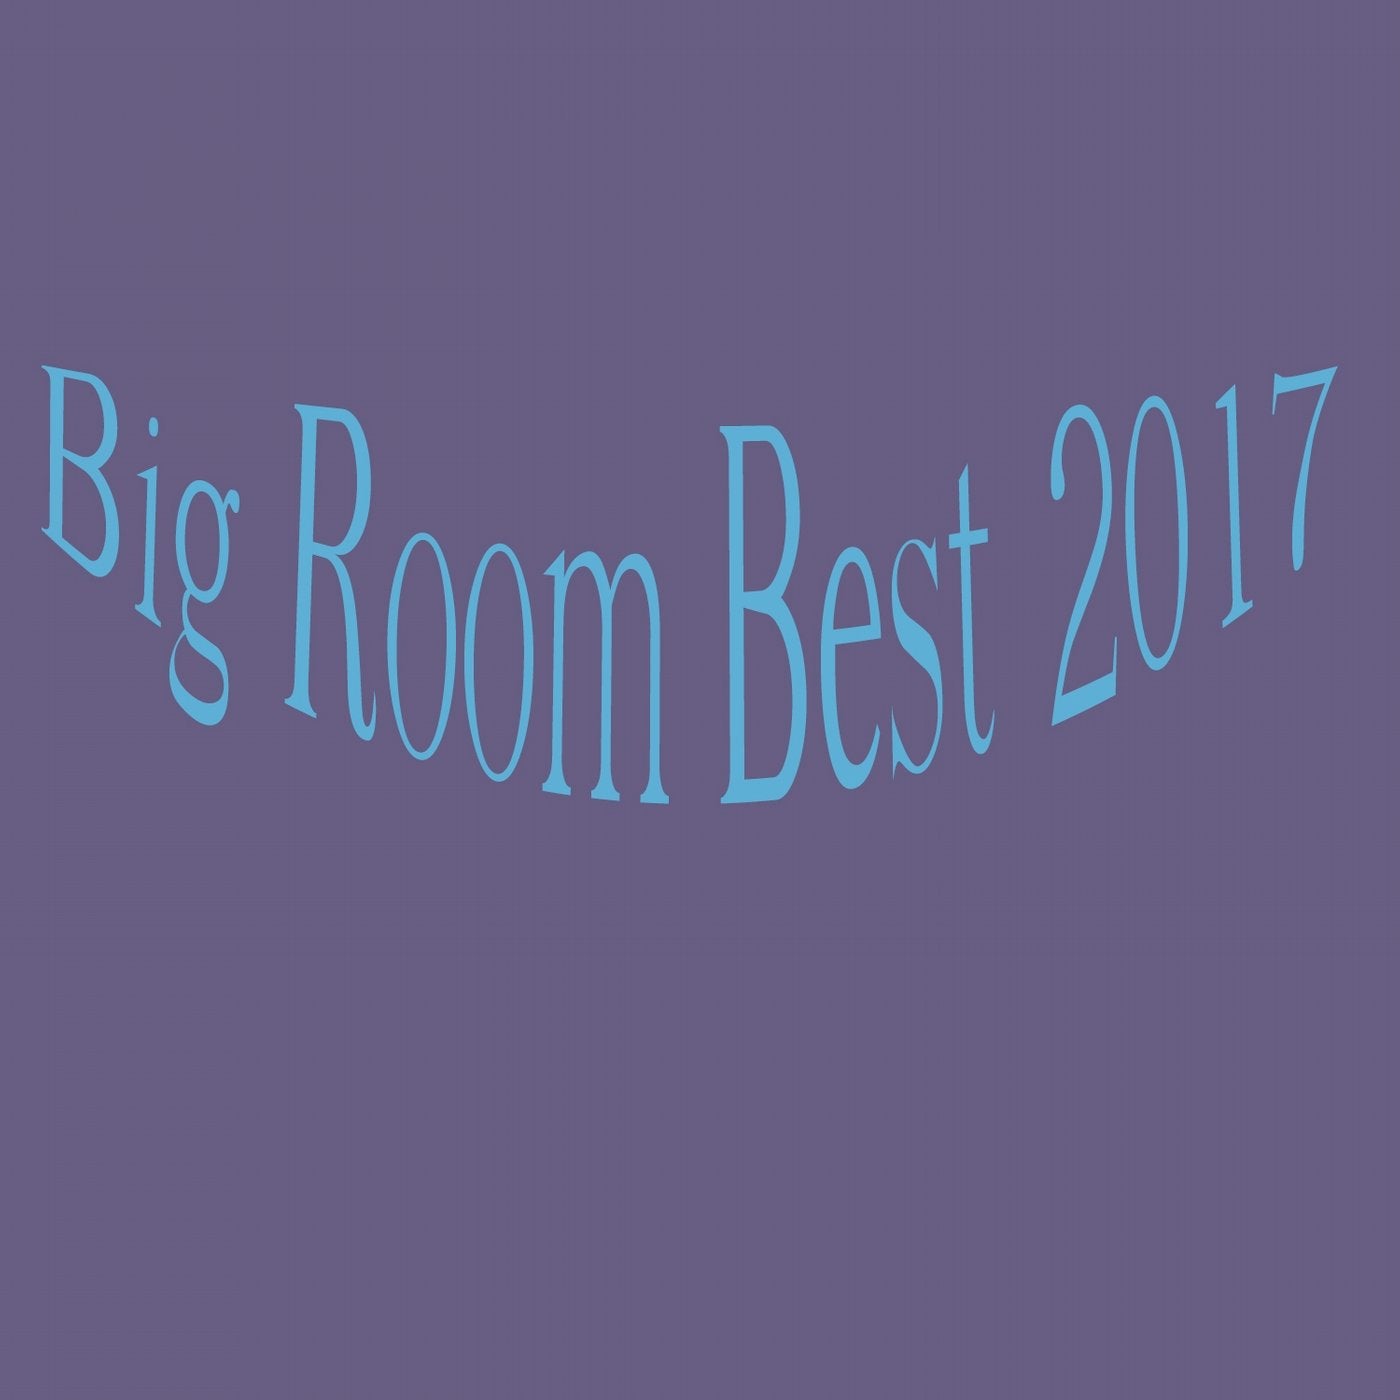 Big Room Best 2017